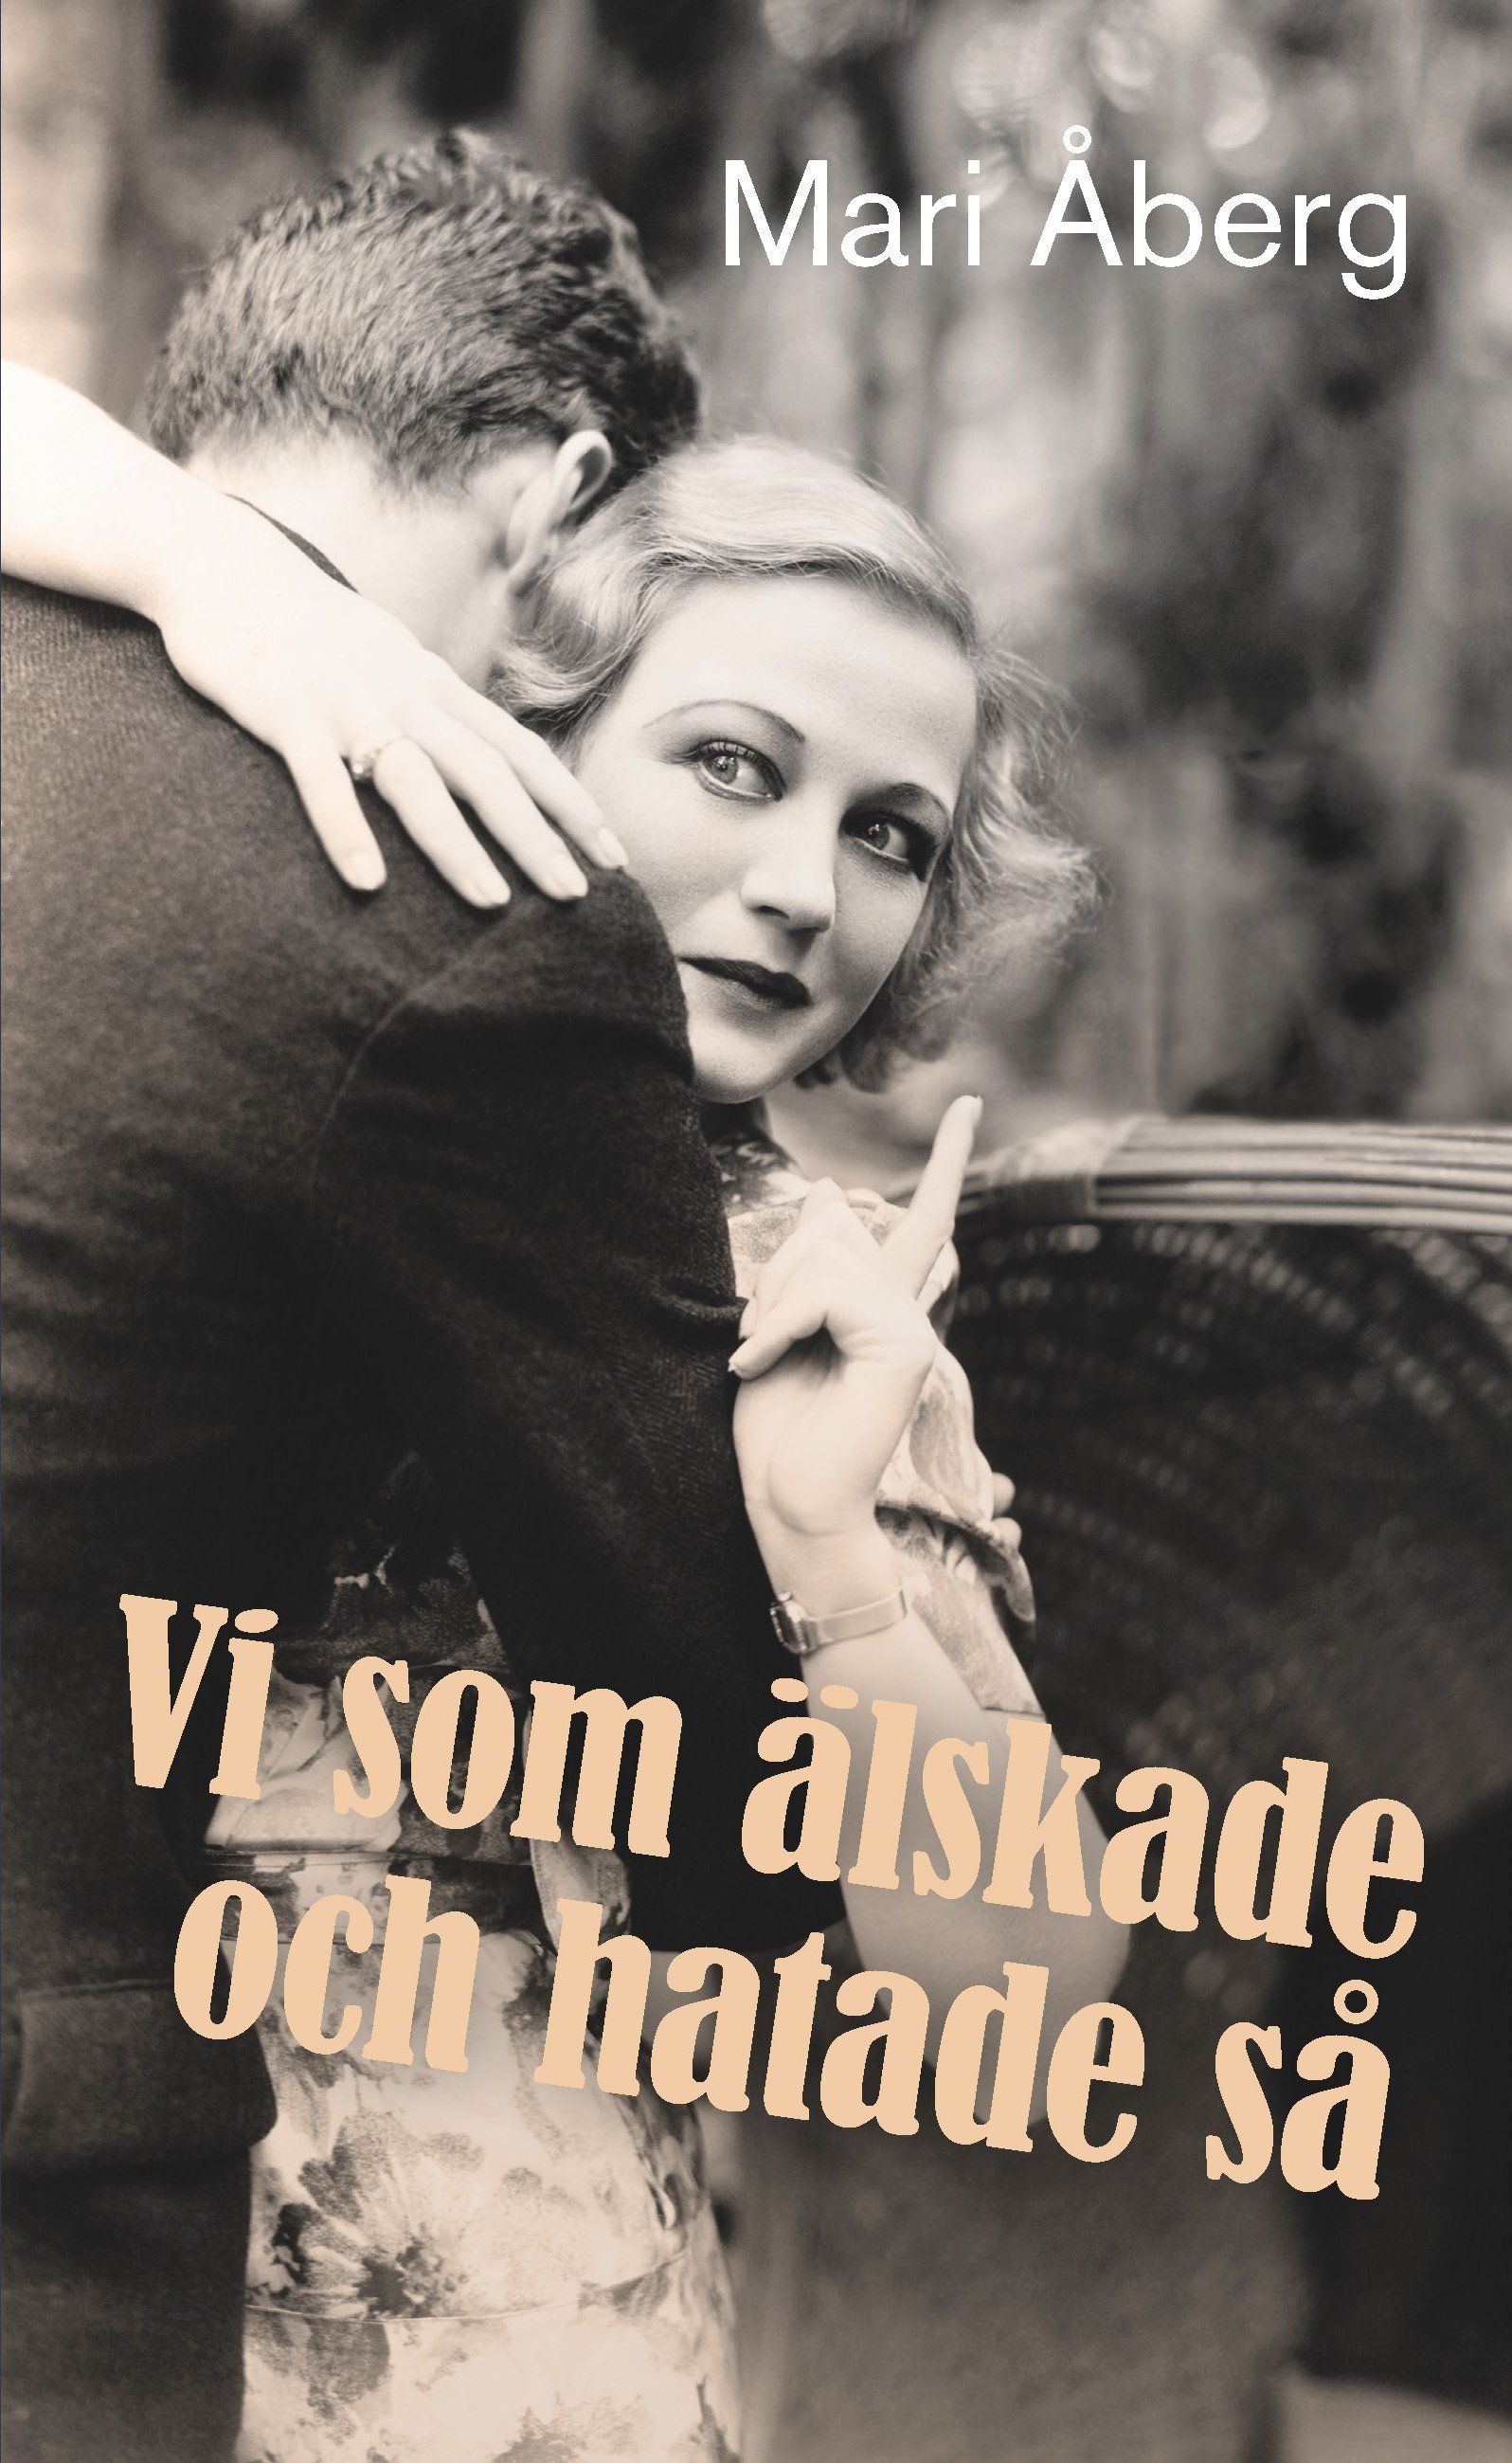 Vi som älskade och hatade så, e-bog af Mari Åberg